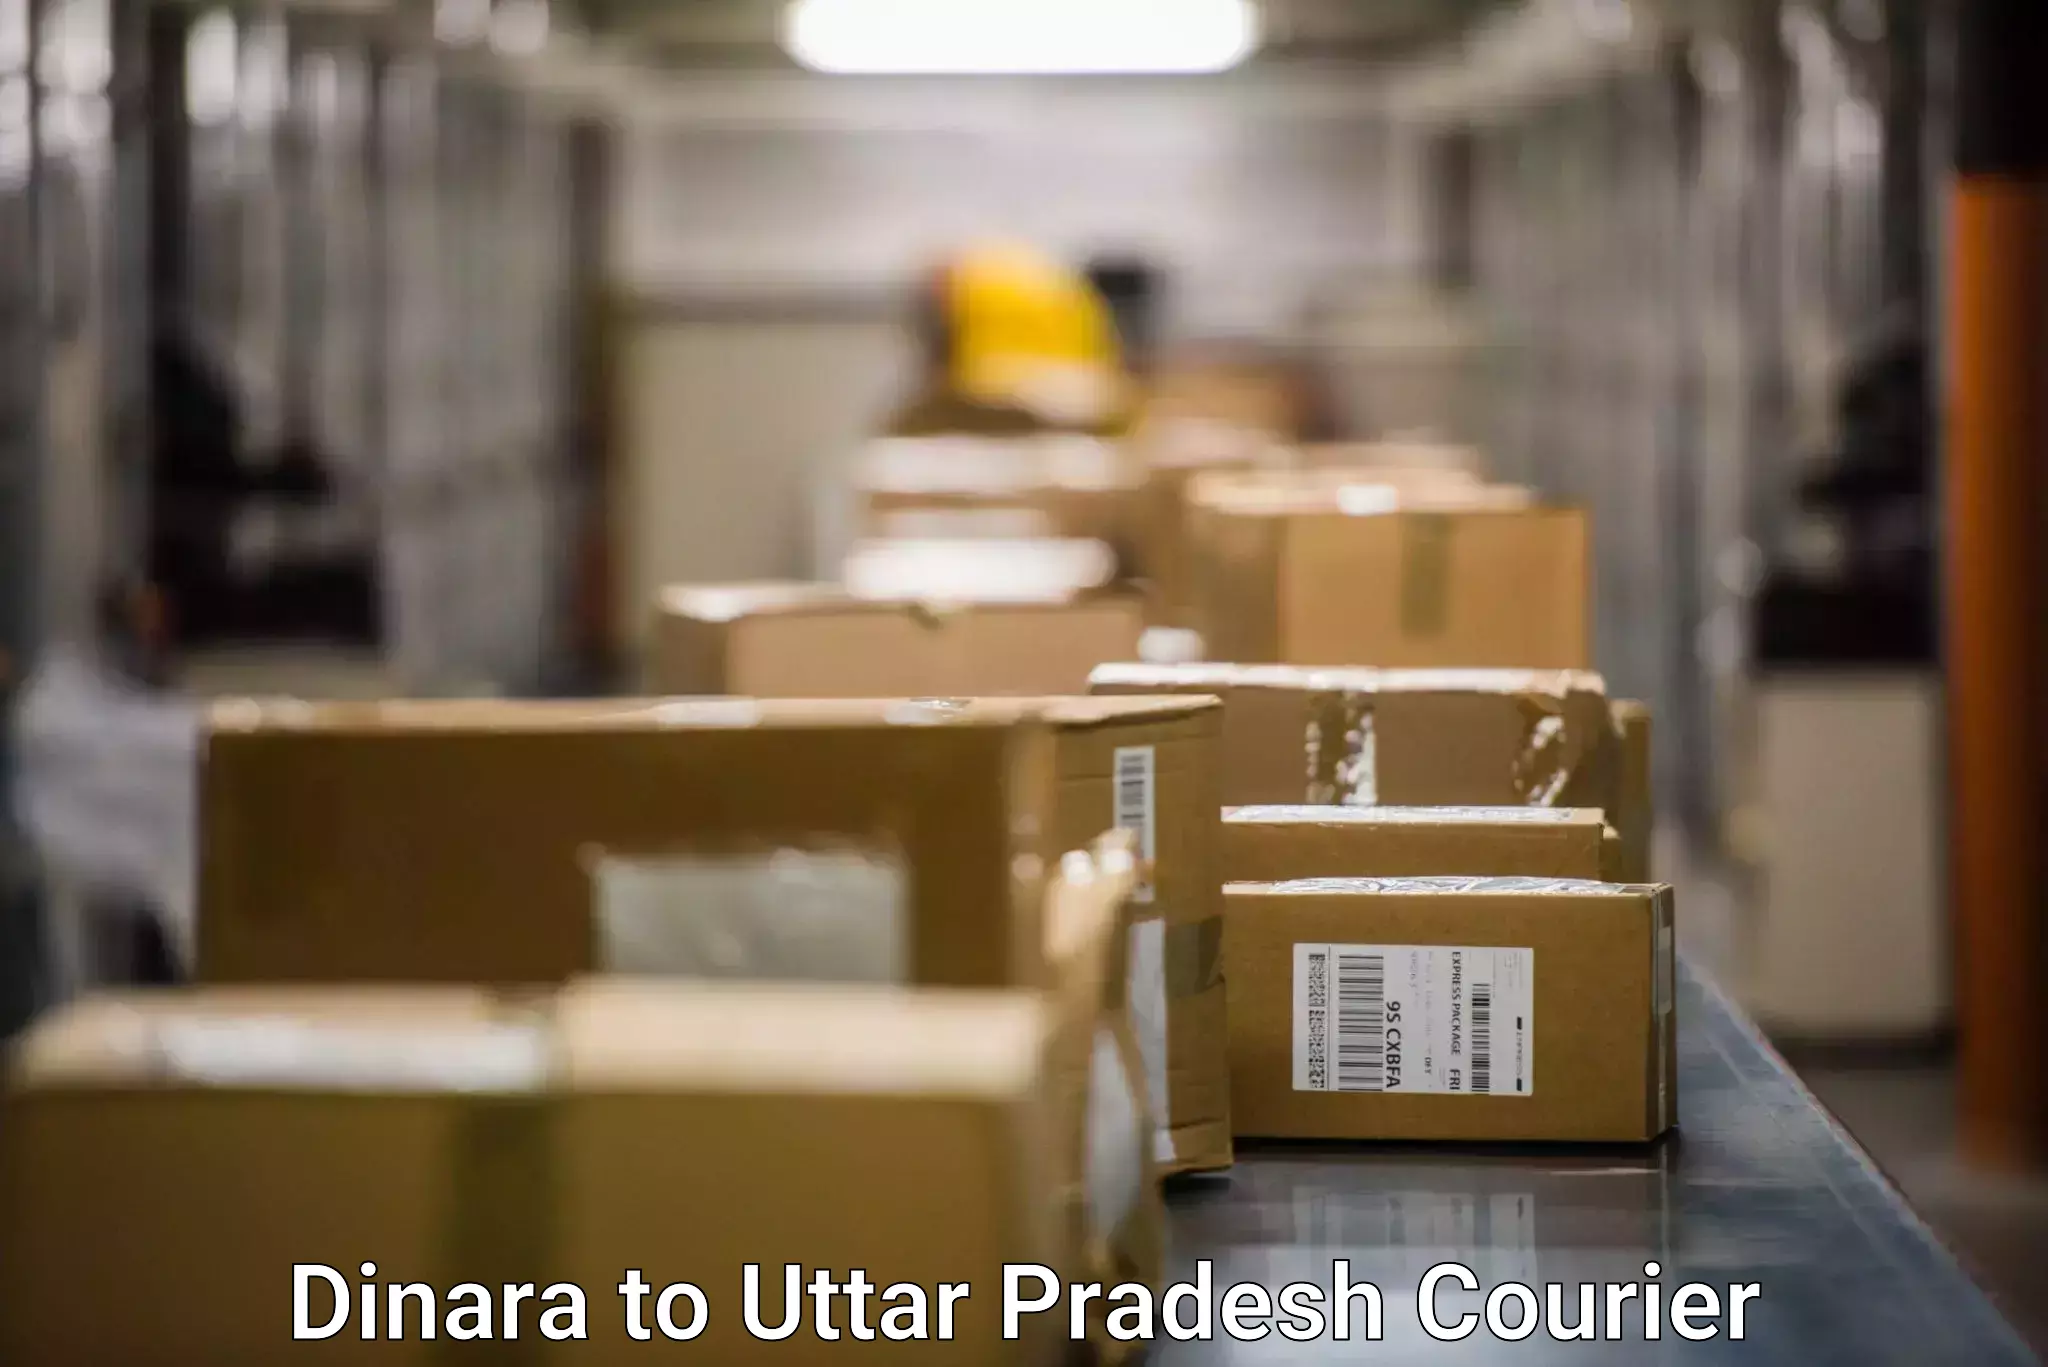 Online shipping calculator in Dinara to Uttar Pradesh